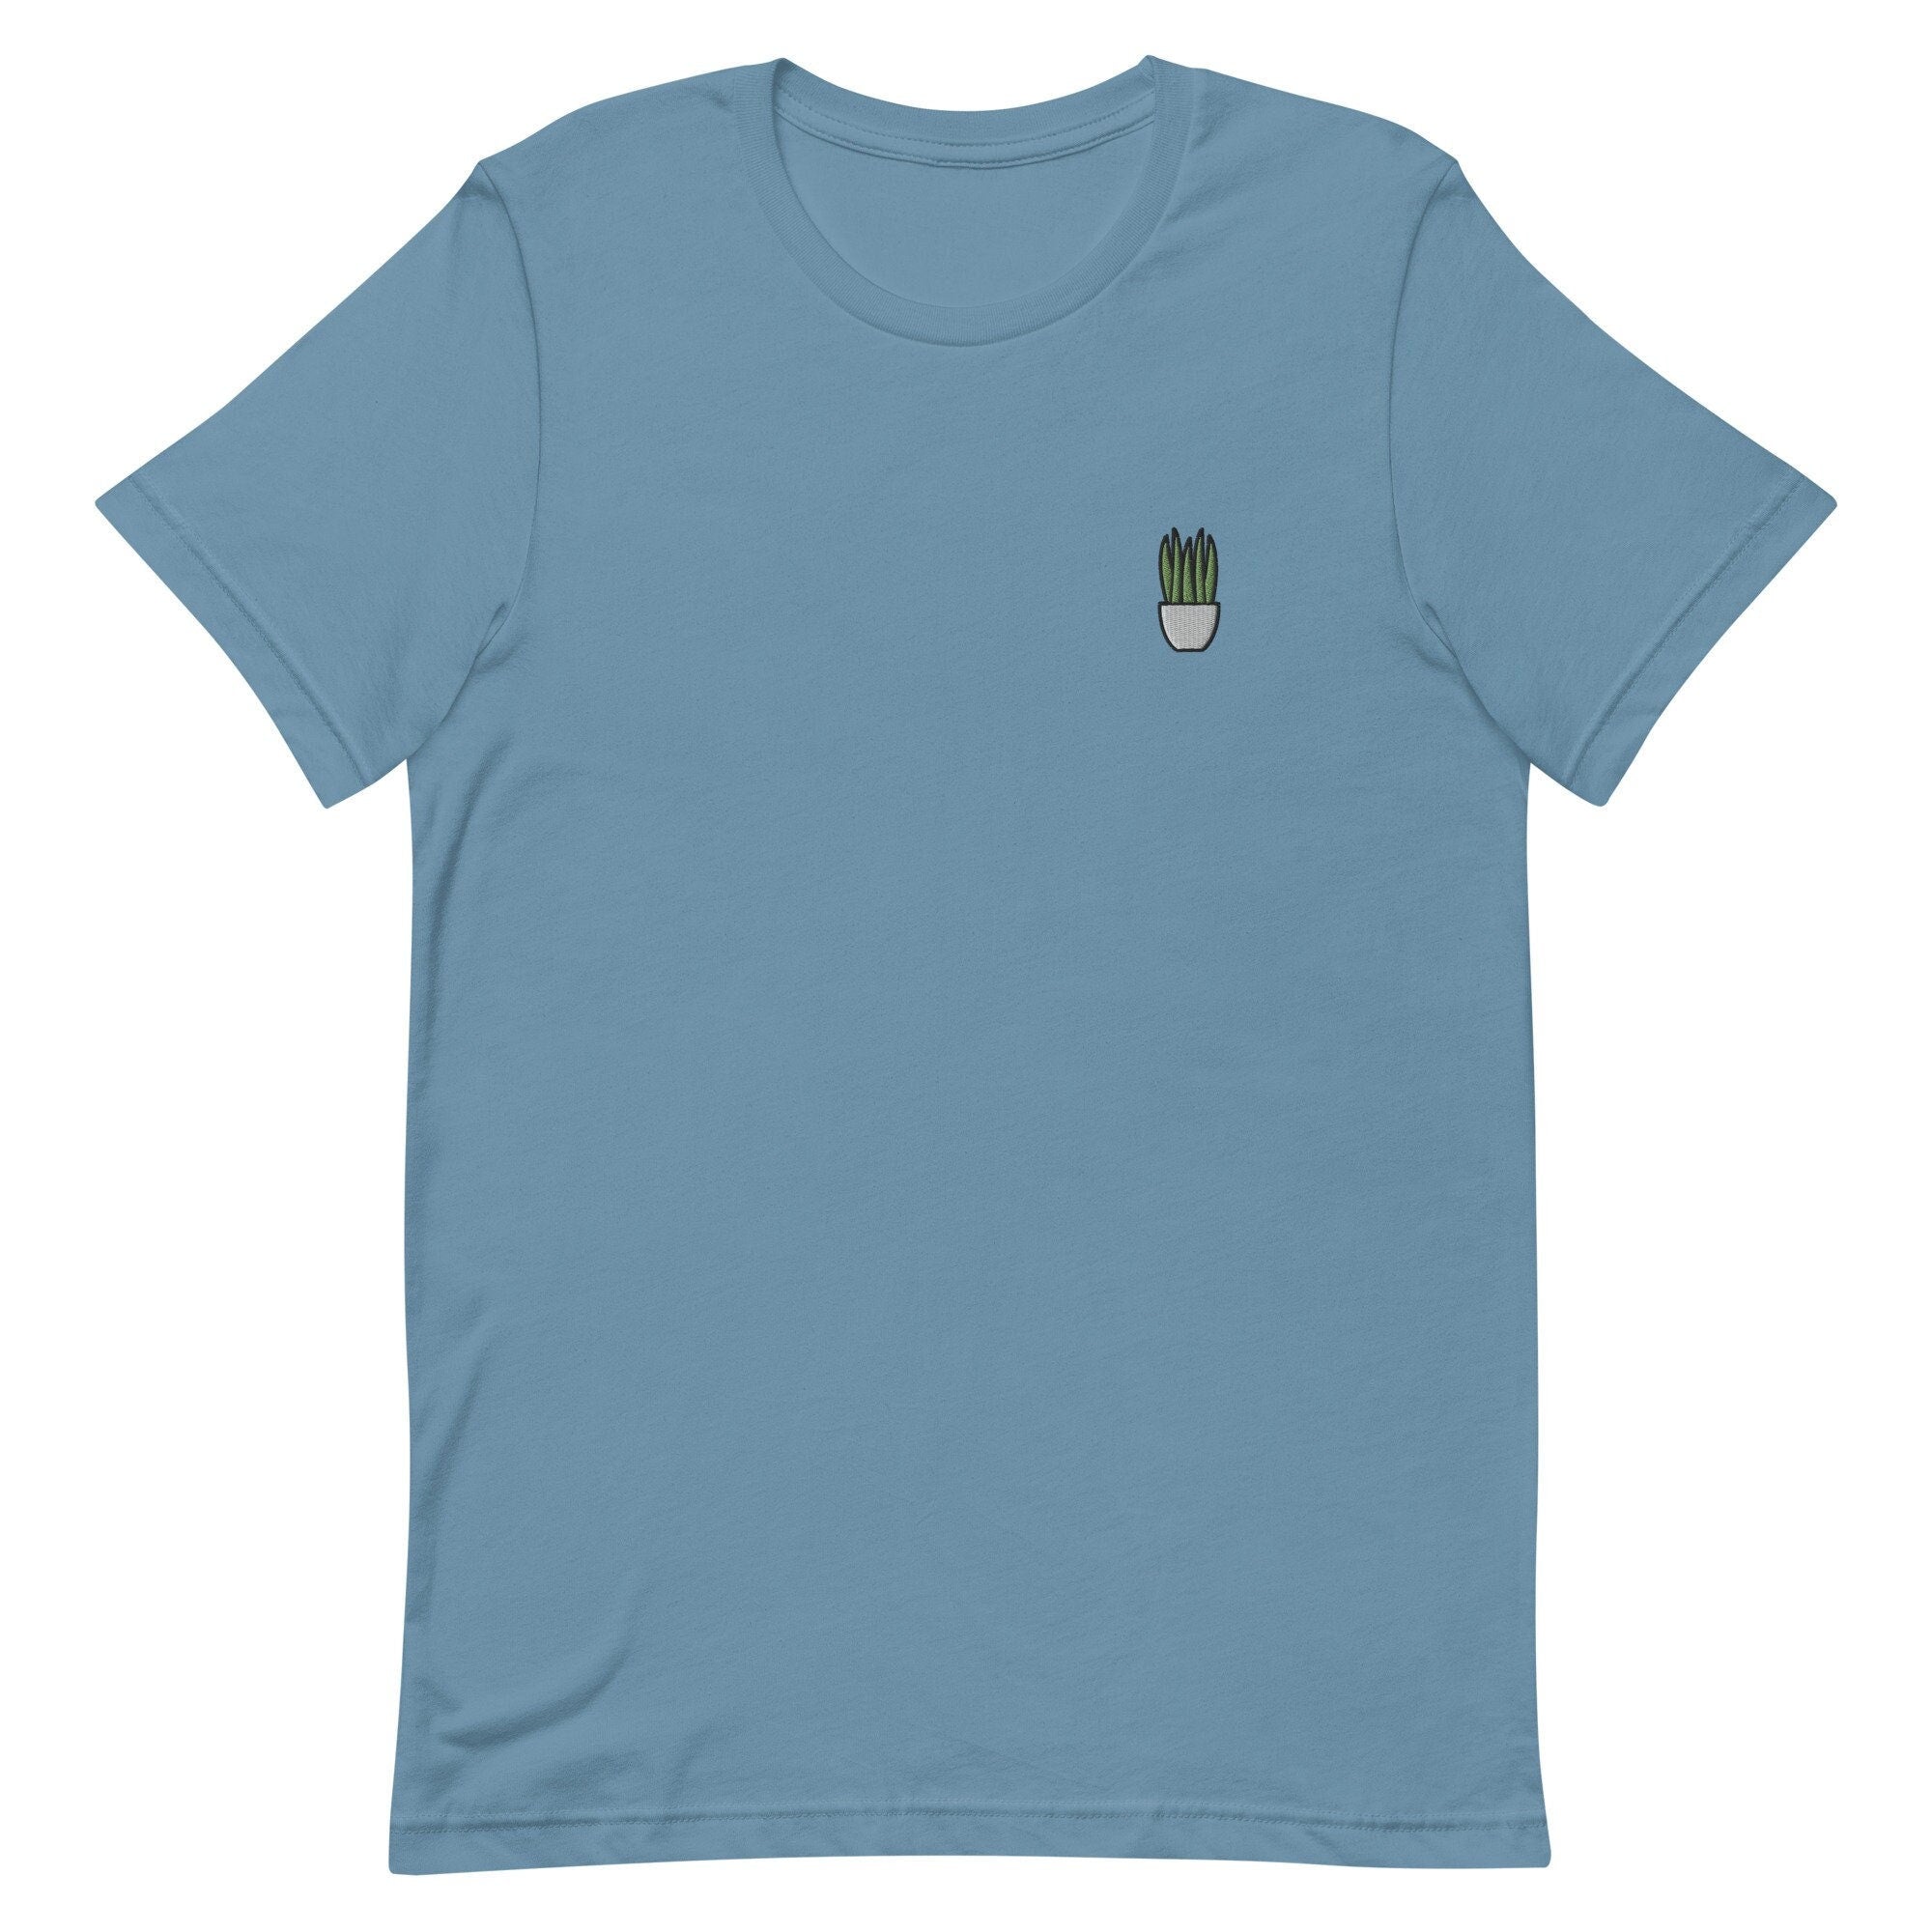 Snake Plant Premium Men's T-Shirt, Embroidered Men's T-Shirt Gift for Boyfriend, Men's Short Sleeve Shirt - Multiple Colors